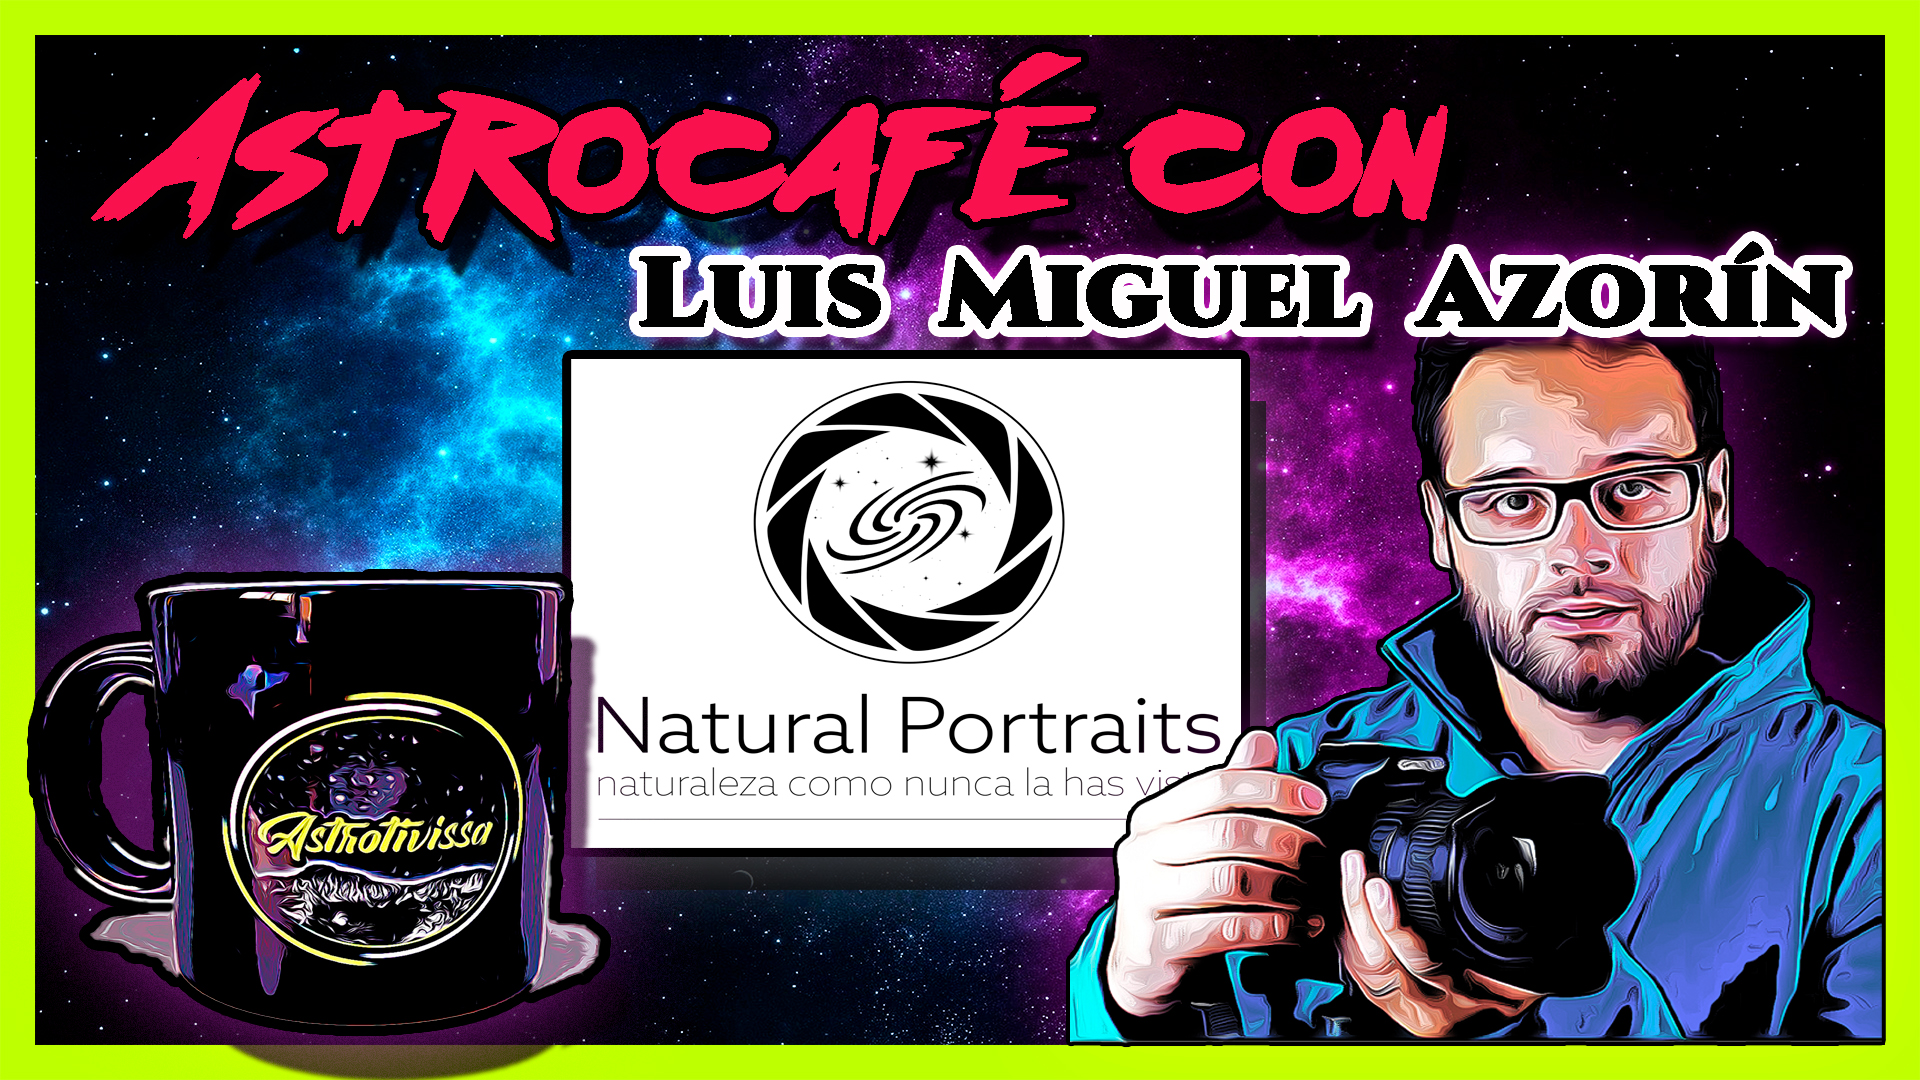 Astrocafé con LUIS MIGUEL AZORÍN | NATURAL PORTRAITS